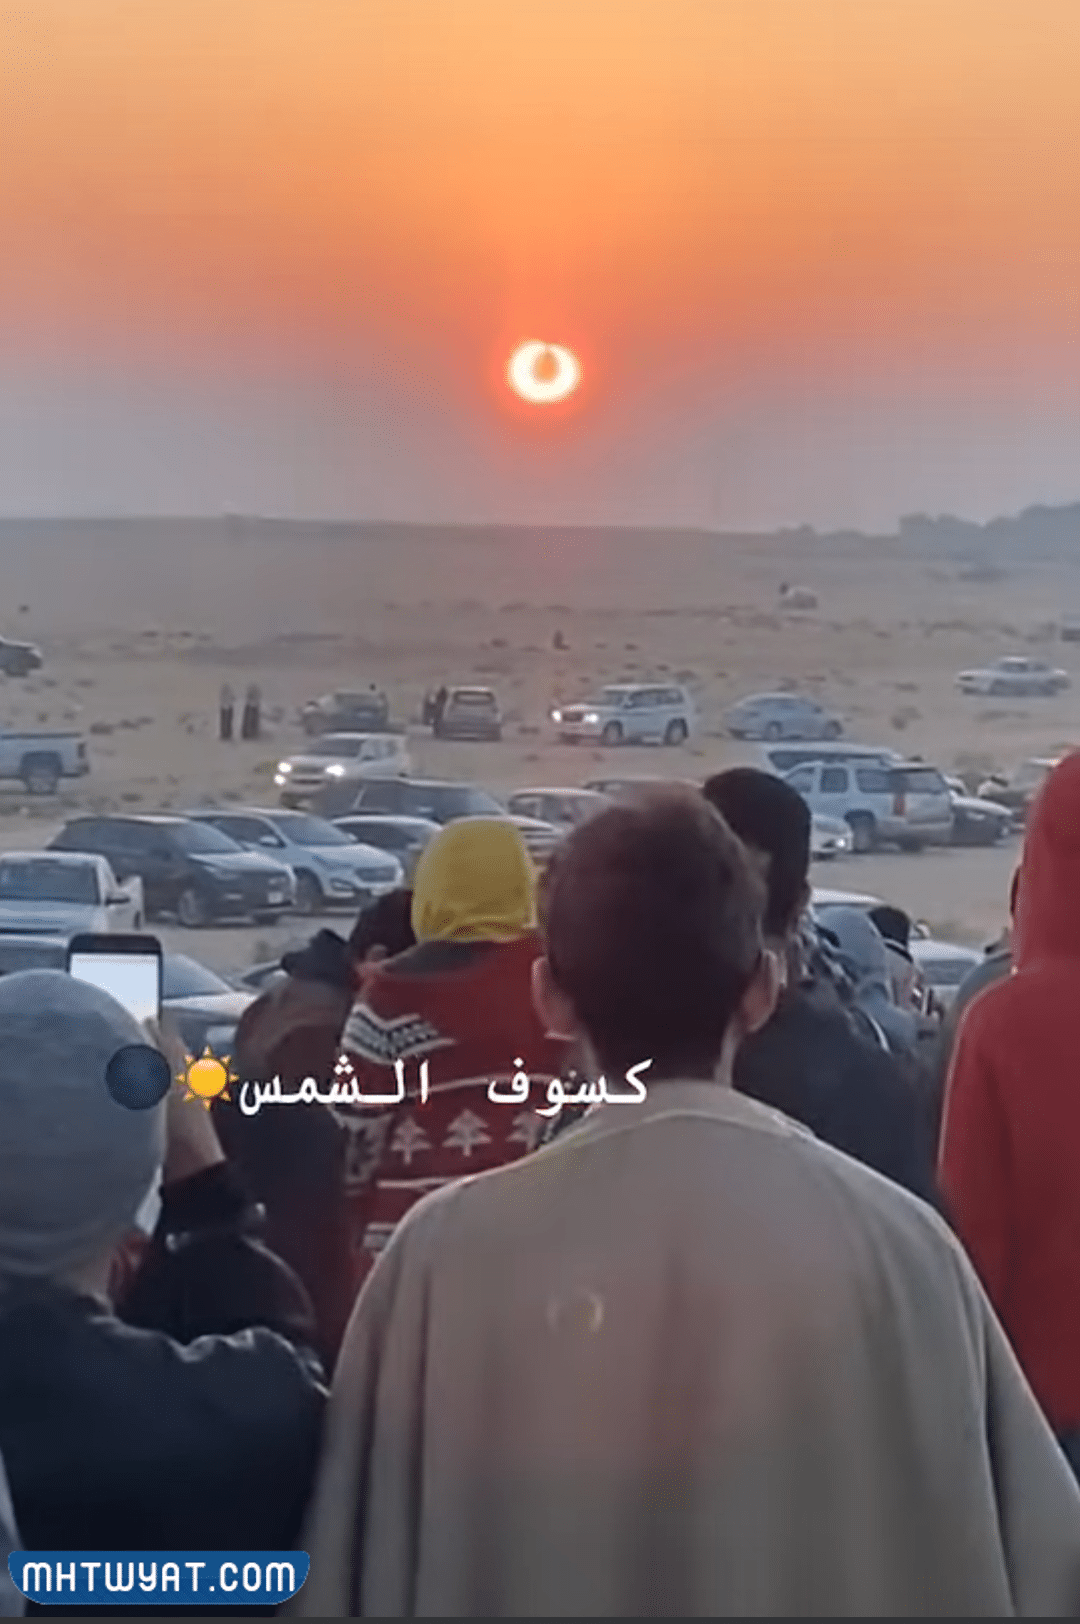 صور كسوف الشمس في السعودية